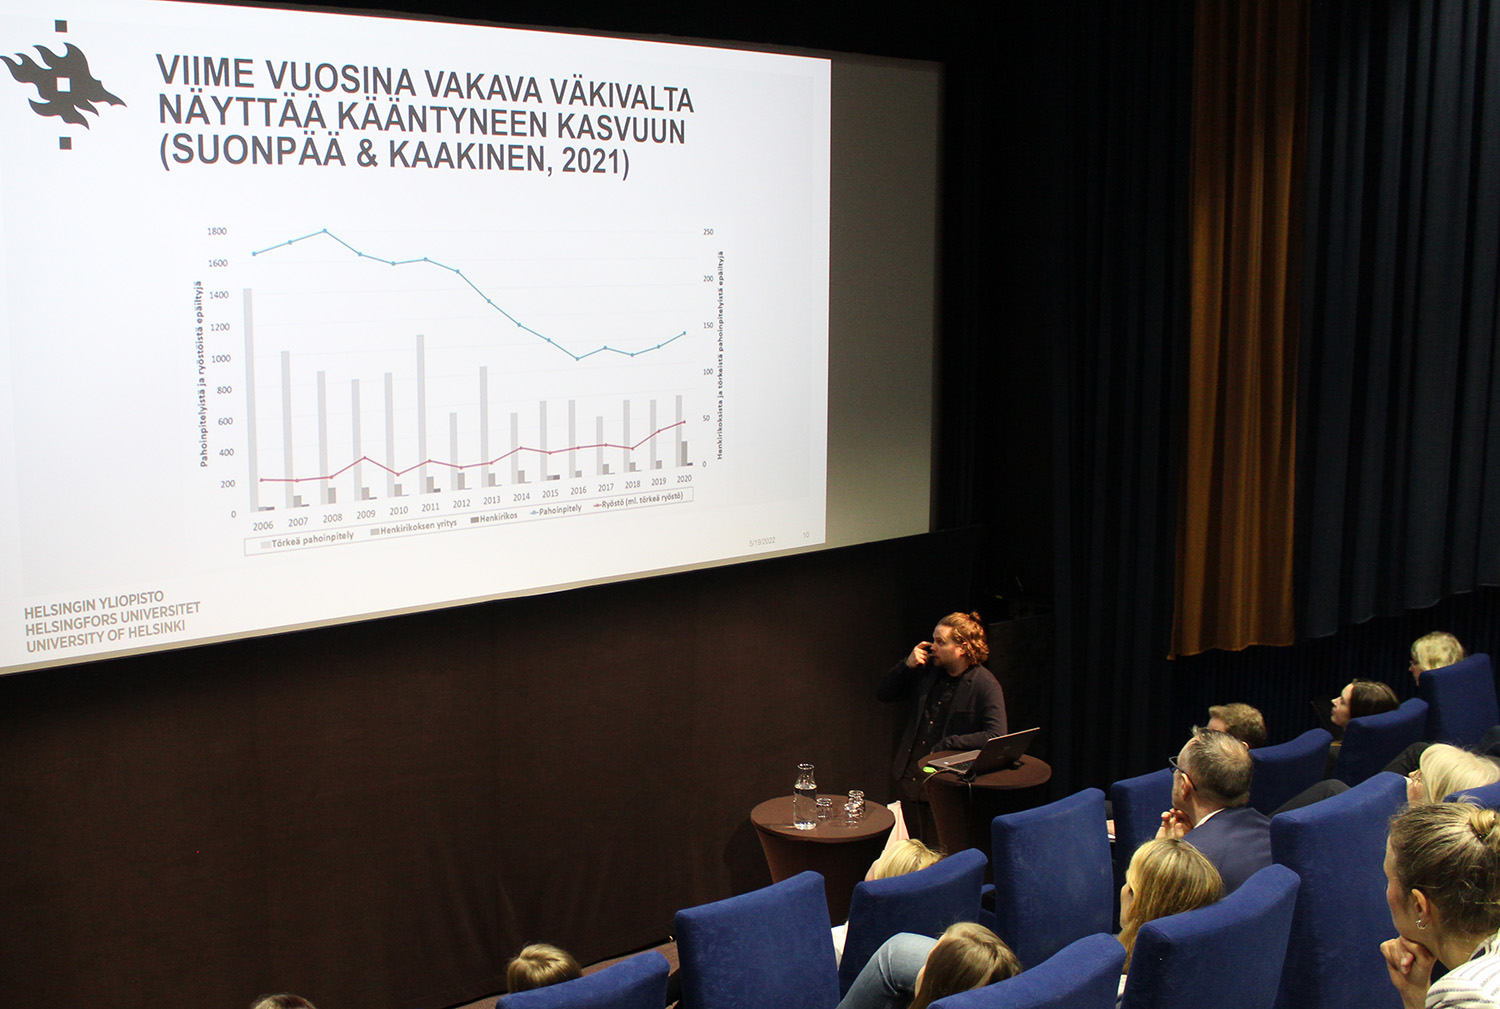 Markus Kaakinen kertoi viime vuosikymmenien nuorisorikollisuuden kehityksestä